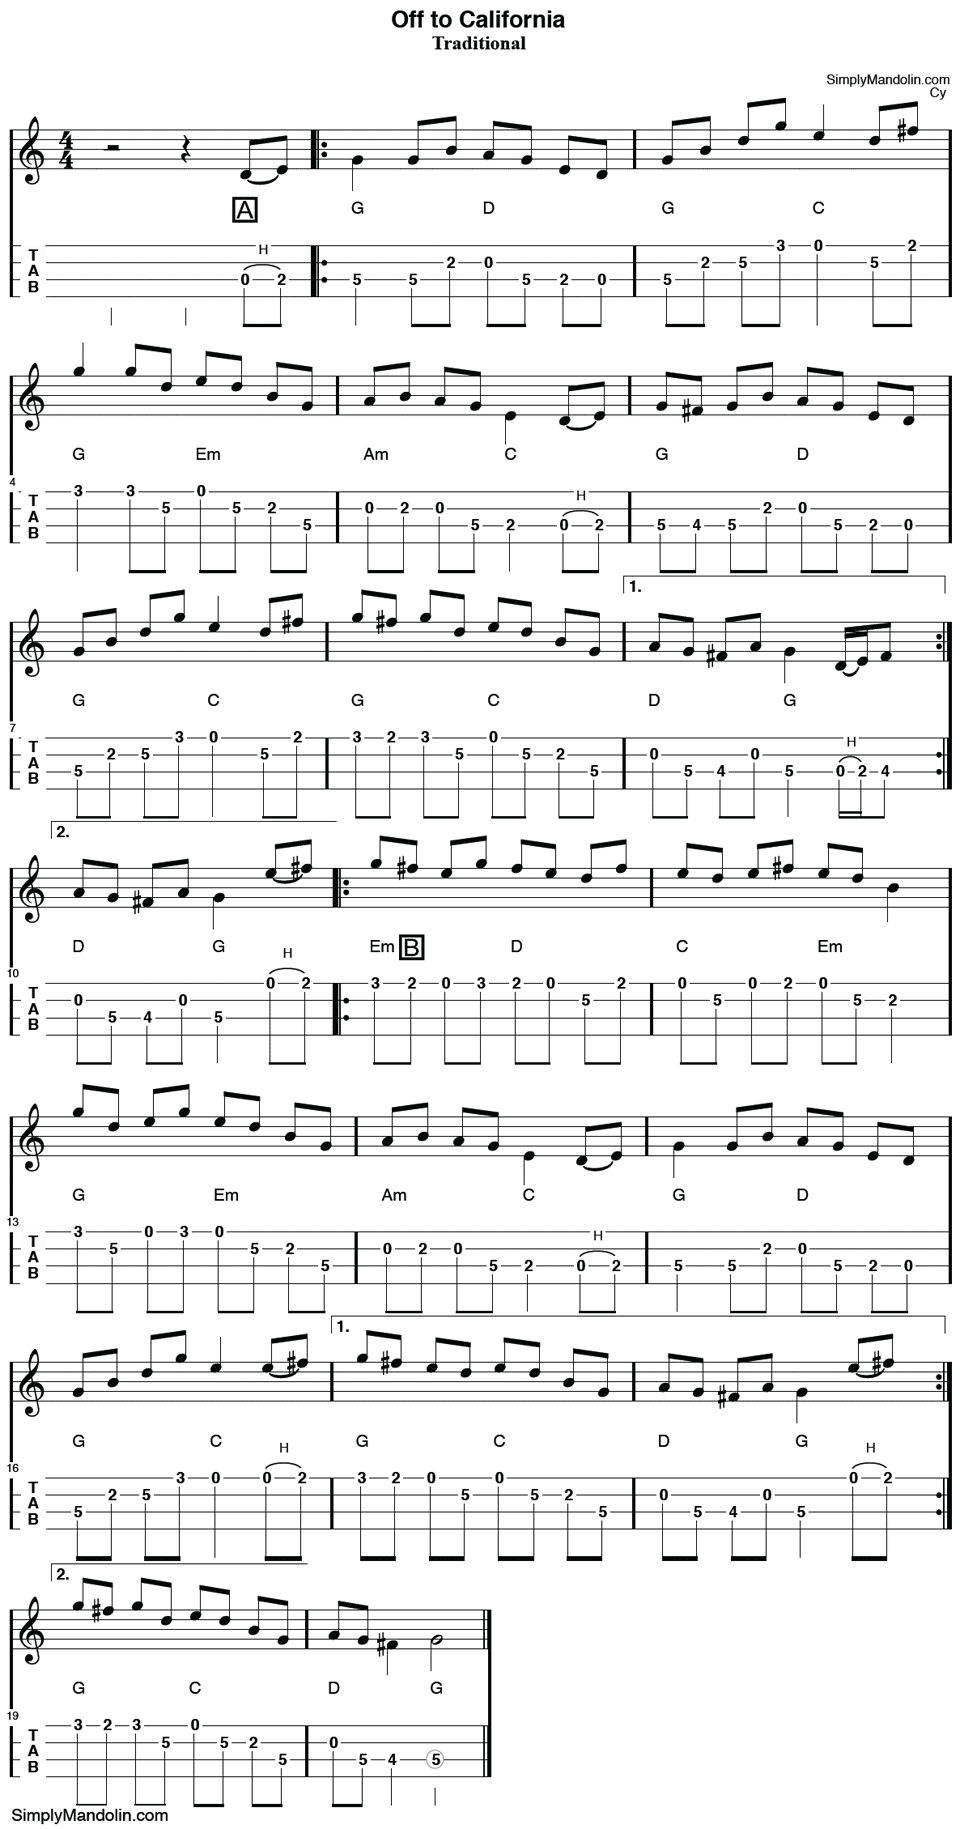 Mandolin tablature for the Irish Hornpipe “Off to California”.